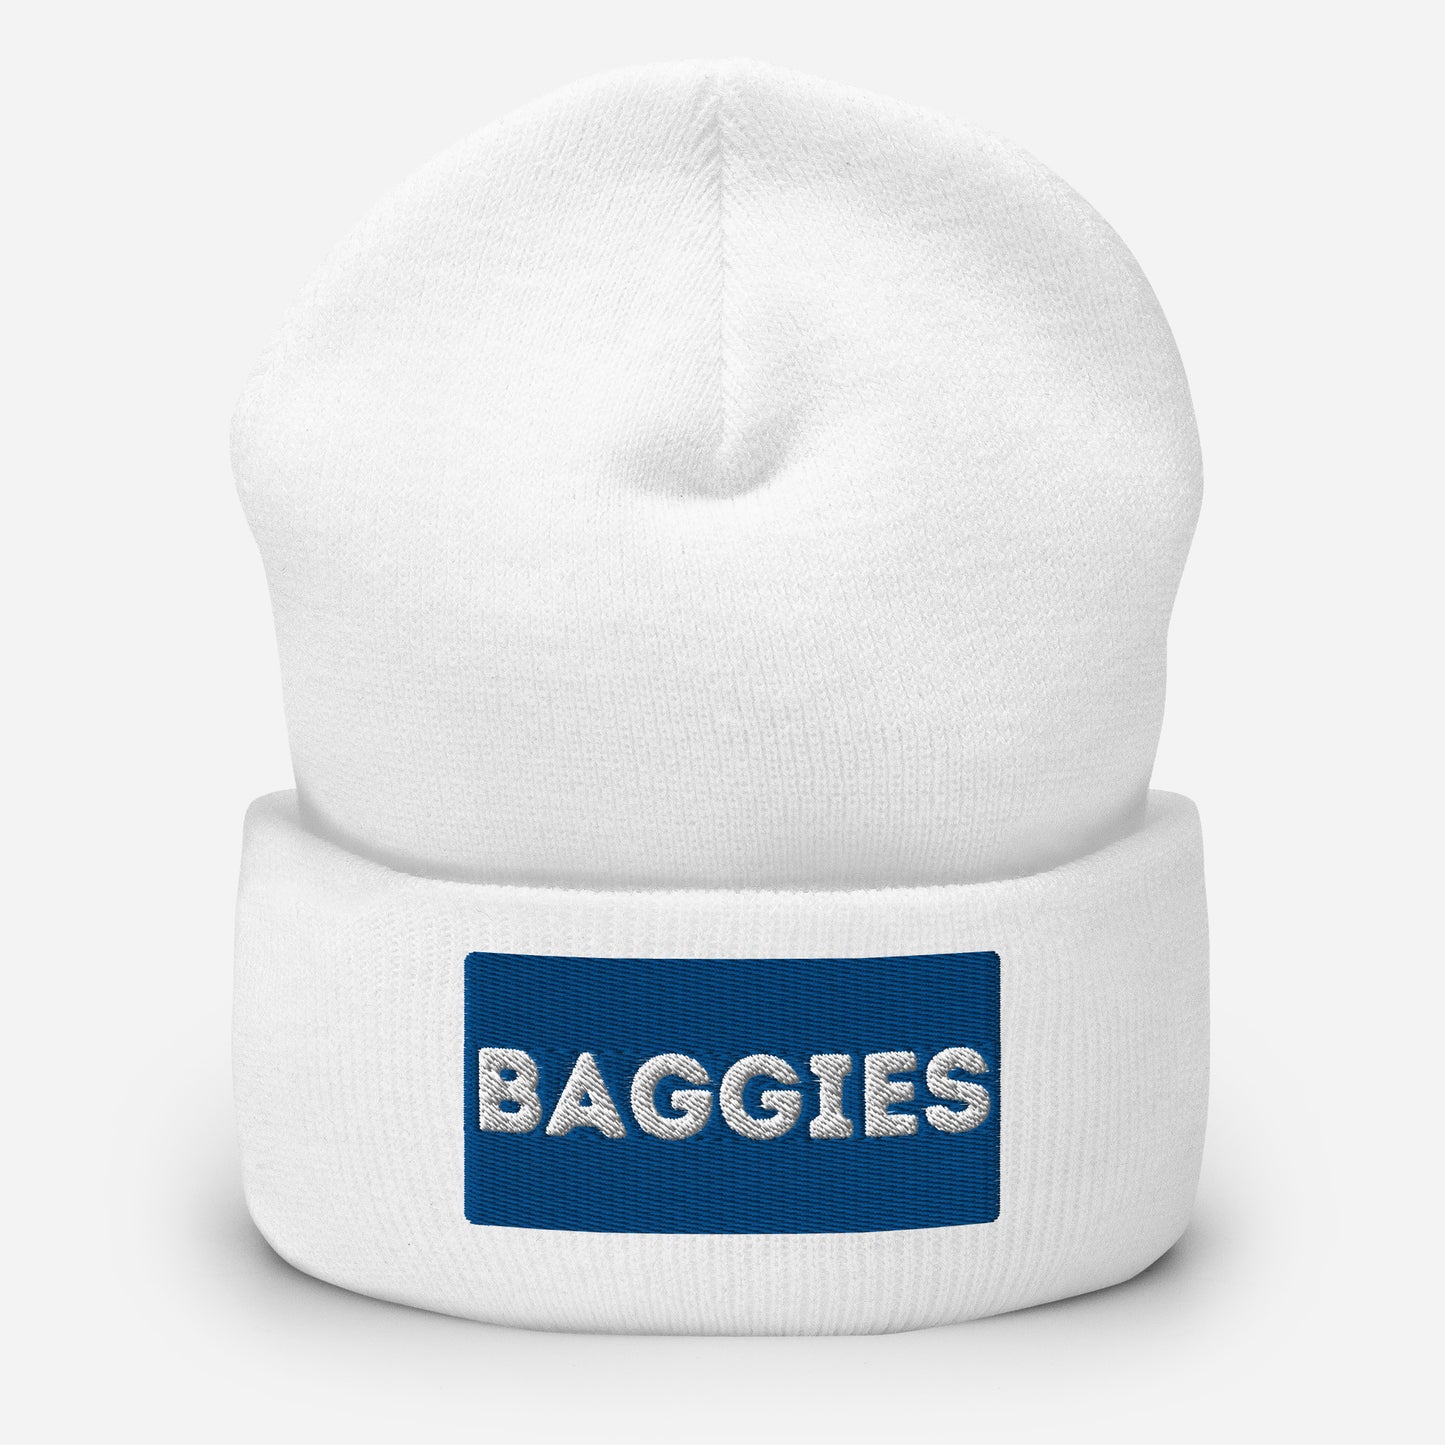 Baggies Cuffed Beanie Hat